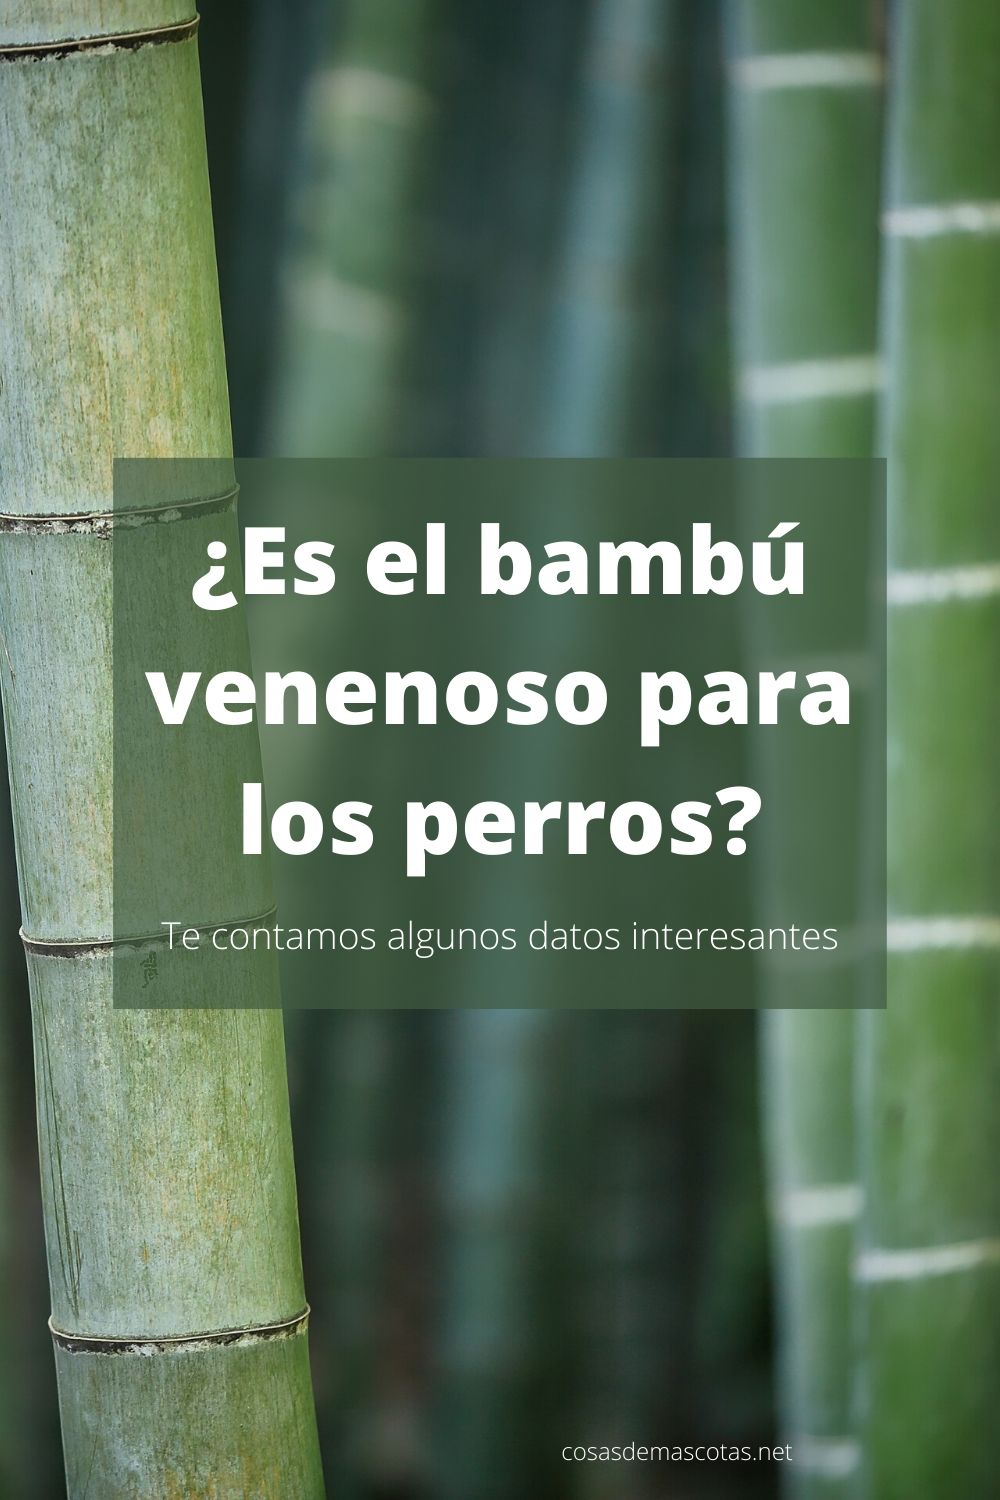 ¿Es el bambú venenoso para los perros?